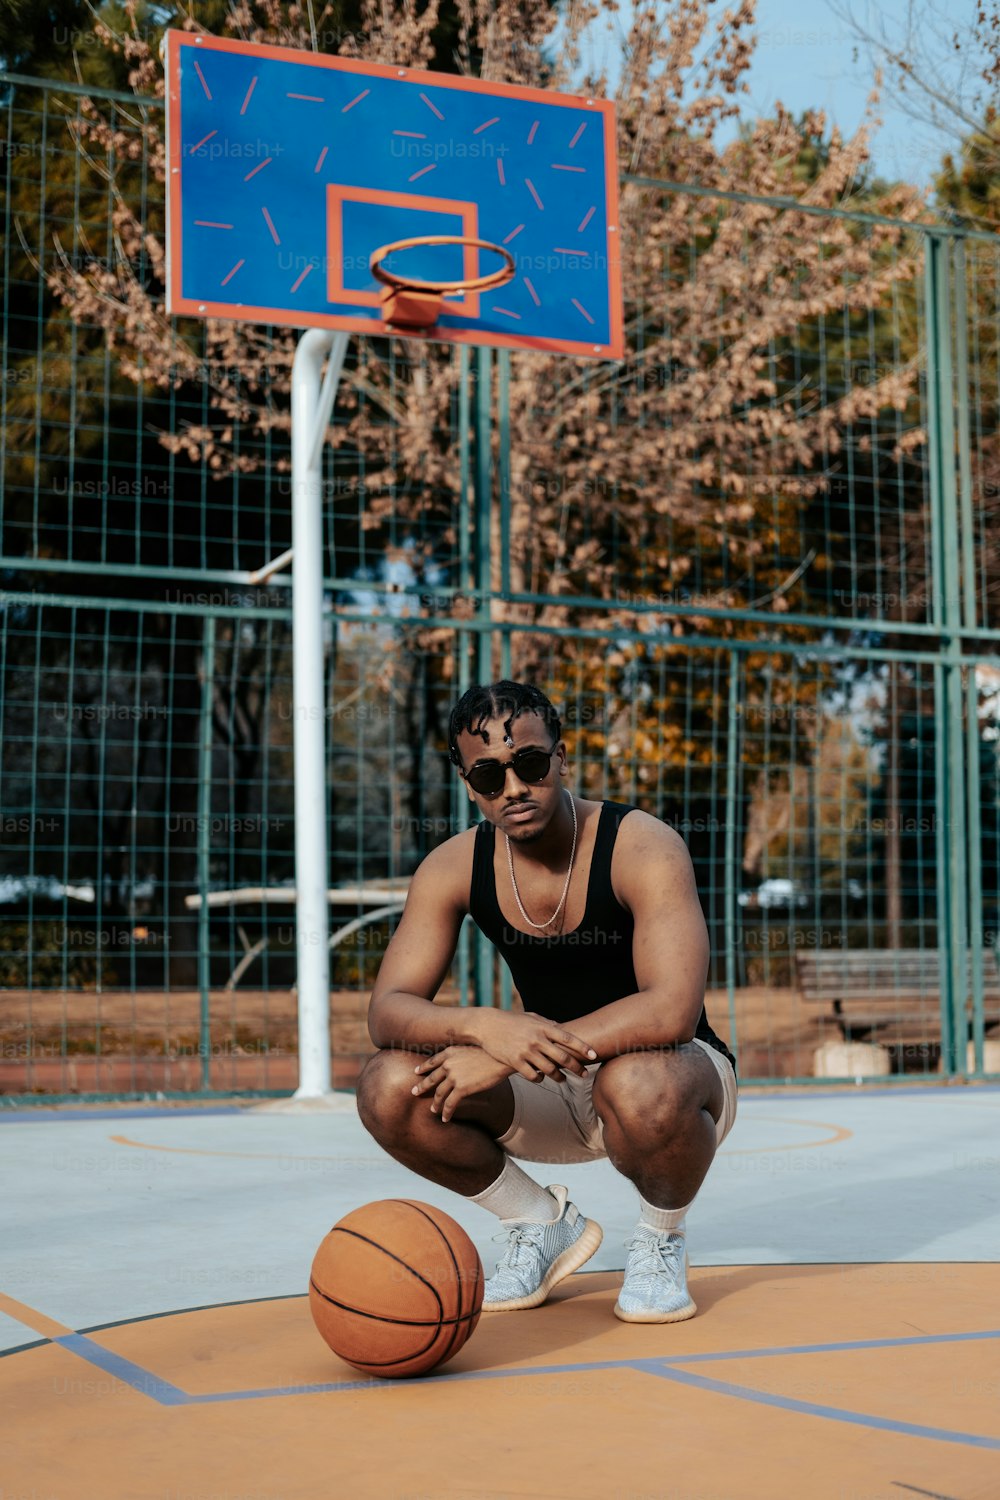 Un hombre arrodillado junto a una pelota de baloncesto en una cancha